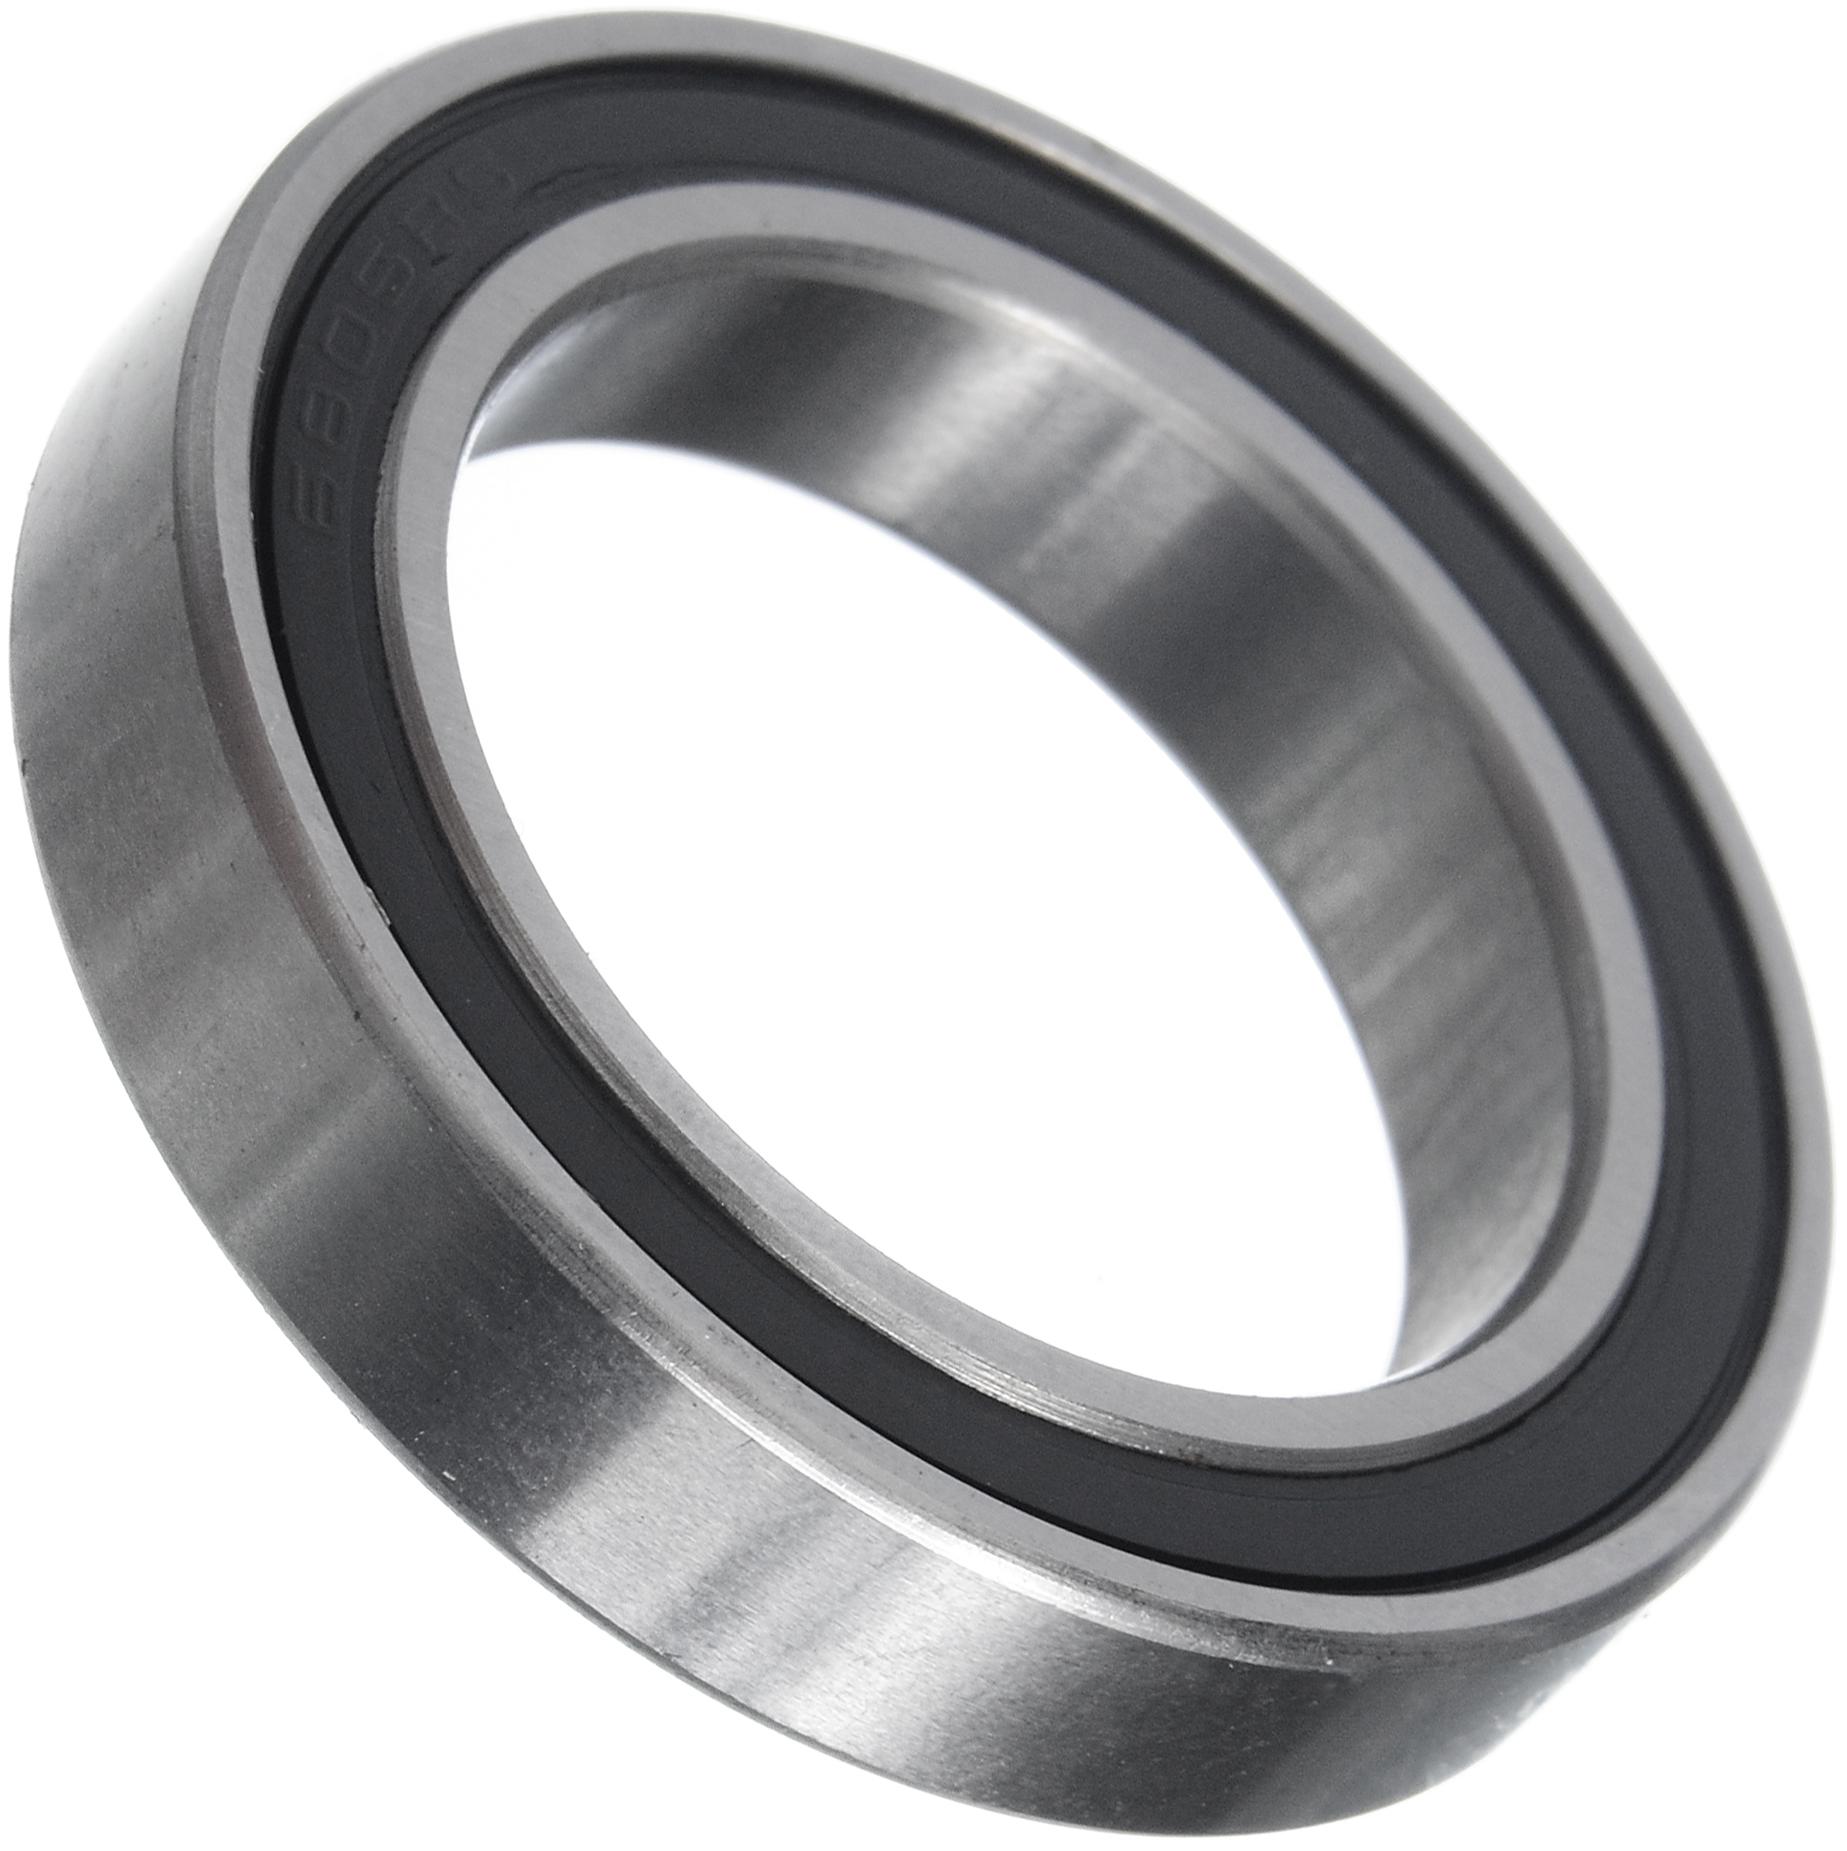 Brand-x Sealed Bearing - 61805 Srs Bearing - Silver